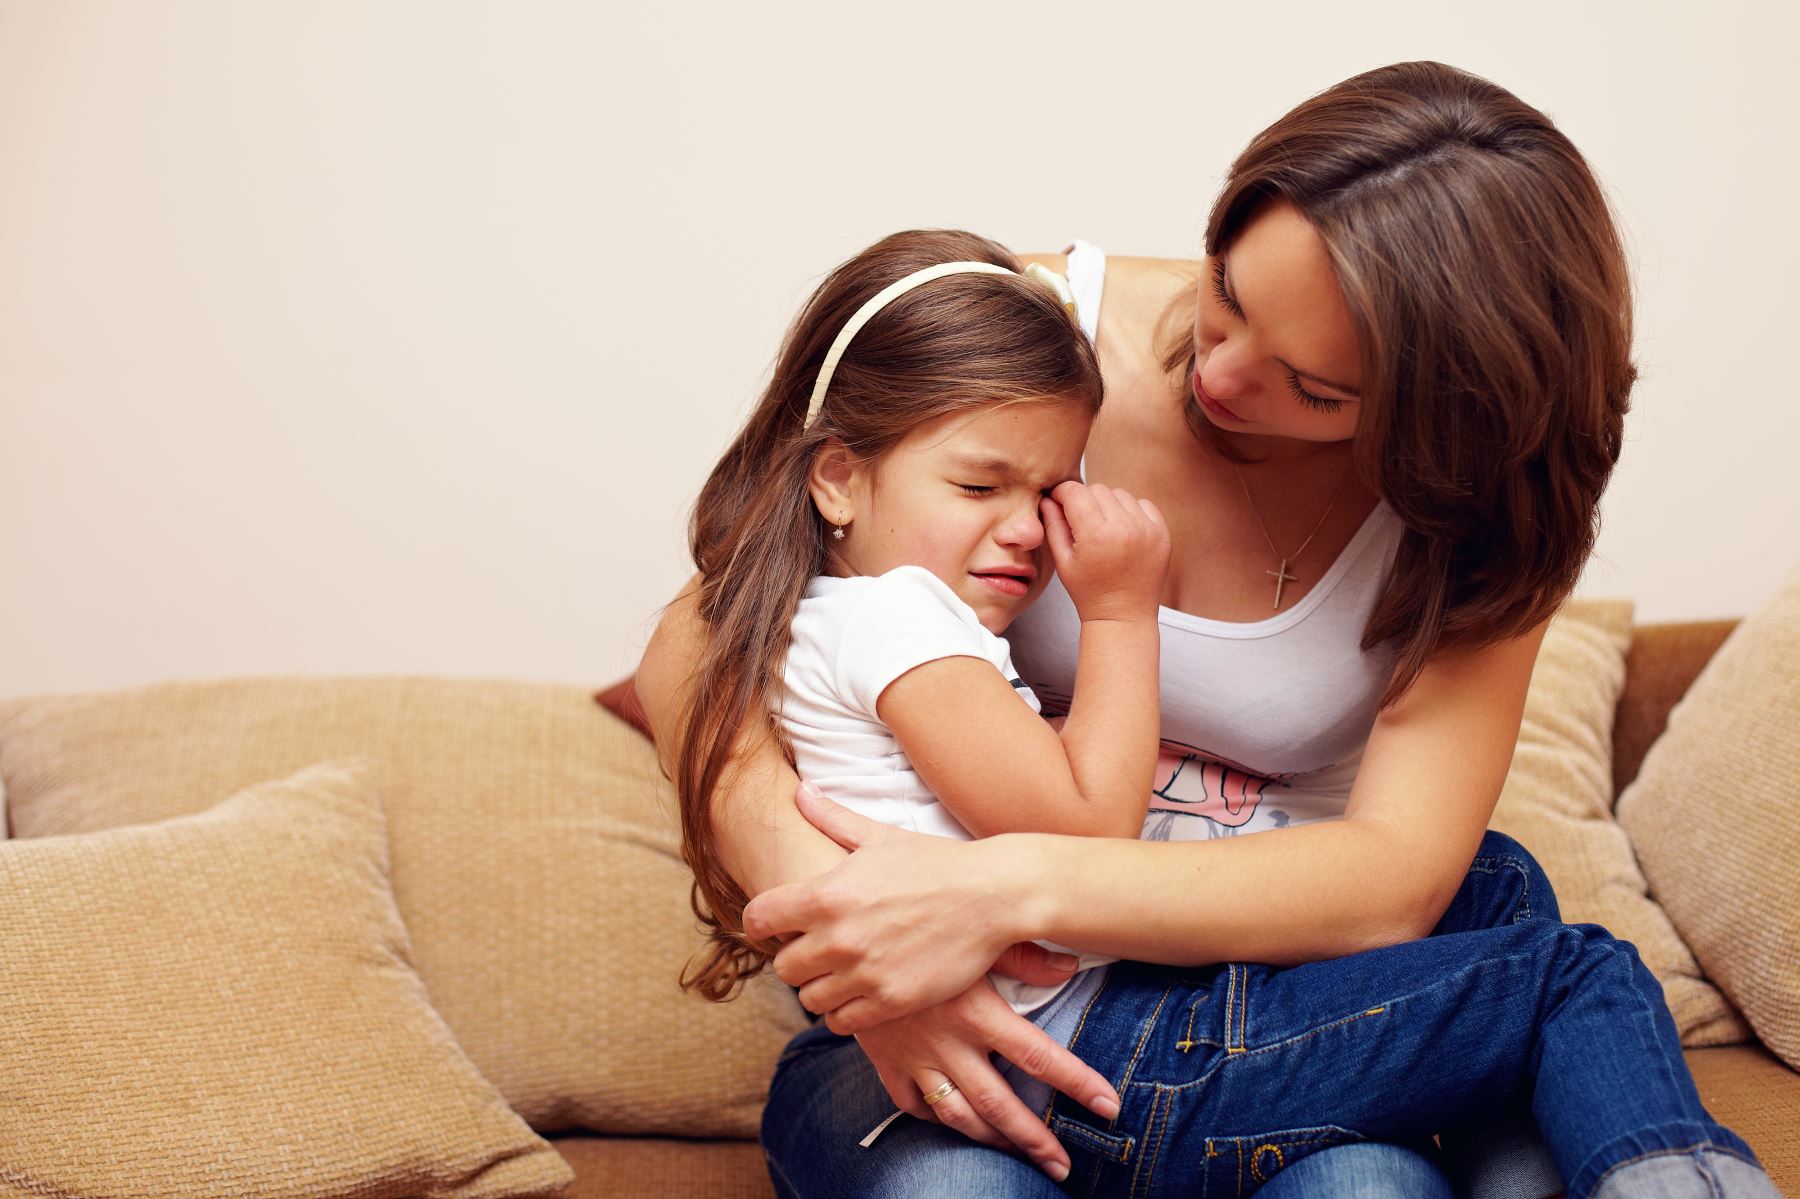 La psiquiatra Jessica Chire refiere que una buena mamá no debe facilitarles la vida a los hijos. Foto: INTERNET/Medios